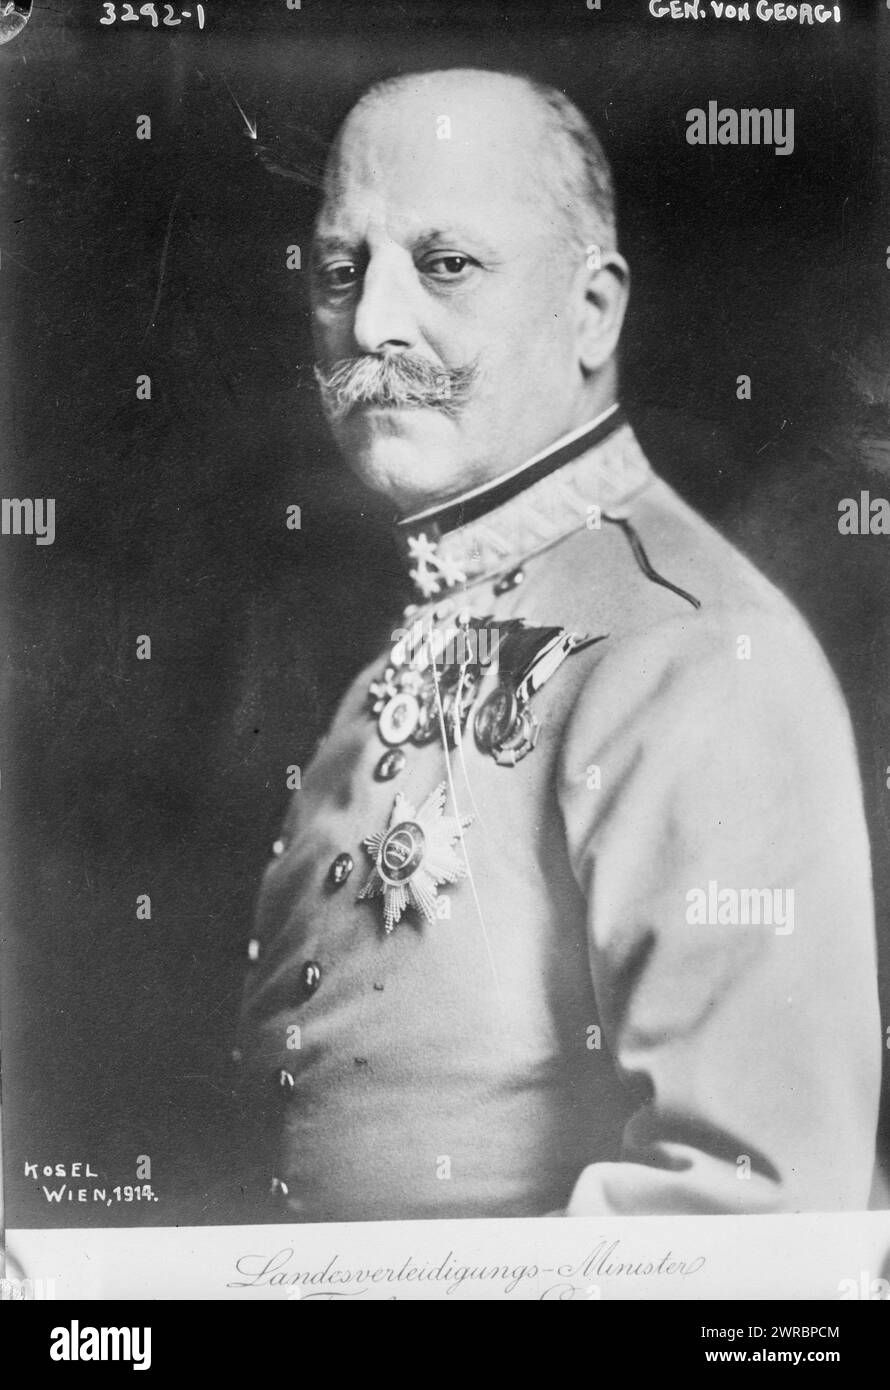 Gen. Von Georgi, la fotografia mostra Friedrich Freiherr von Georgi (1852-1926), un generale dell'esercito imperiale austro-ungarico., 1914, Glass negatives, 1 negative: Glass Foto Stock